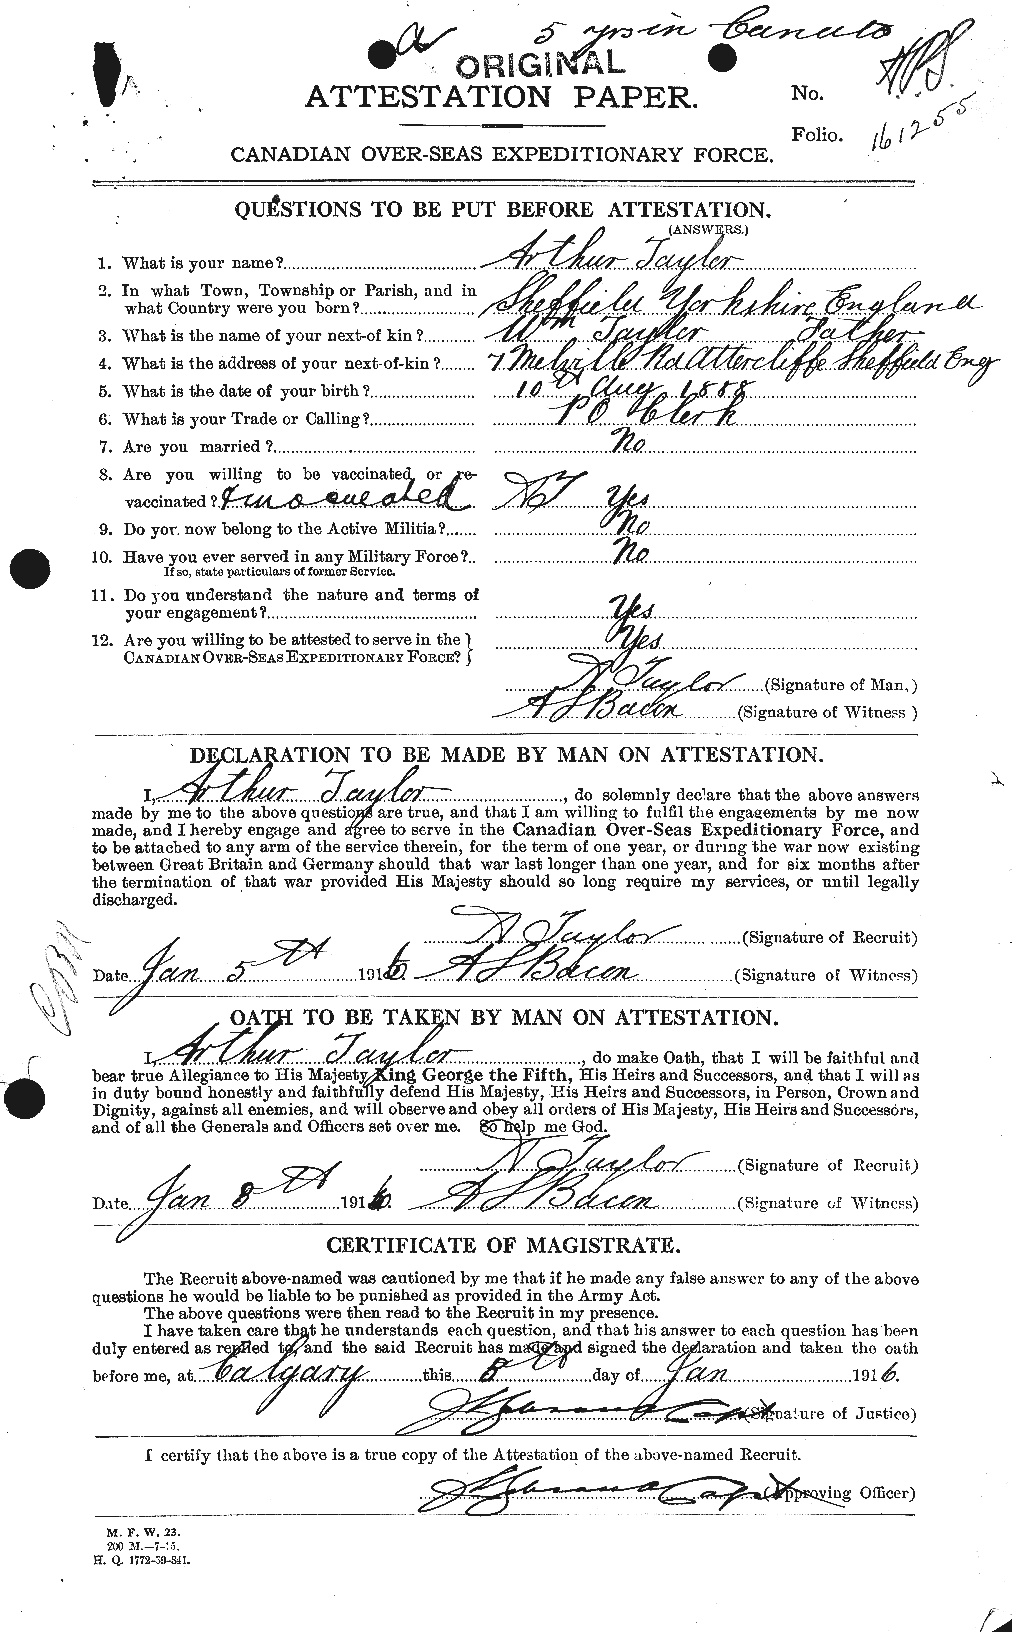 Dossiers du Personnel de la Première Guerre mondiale - CEC 626697a